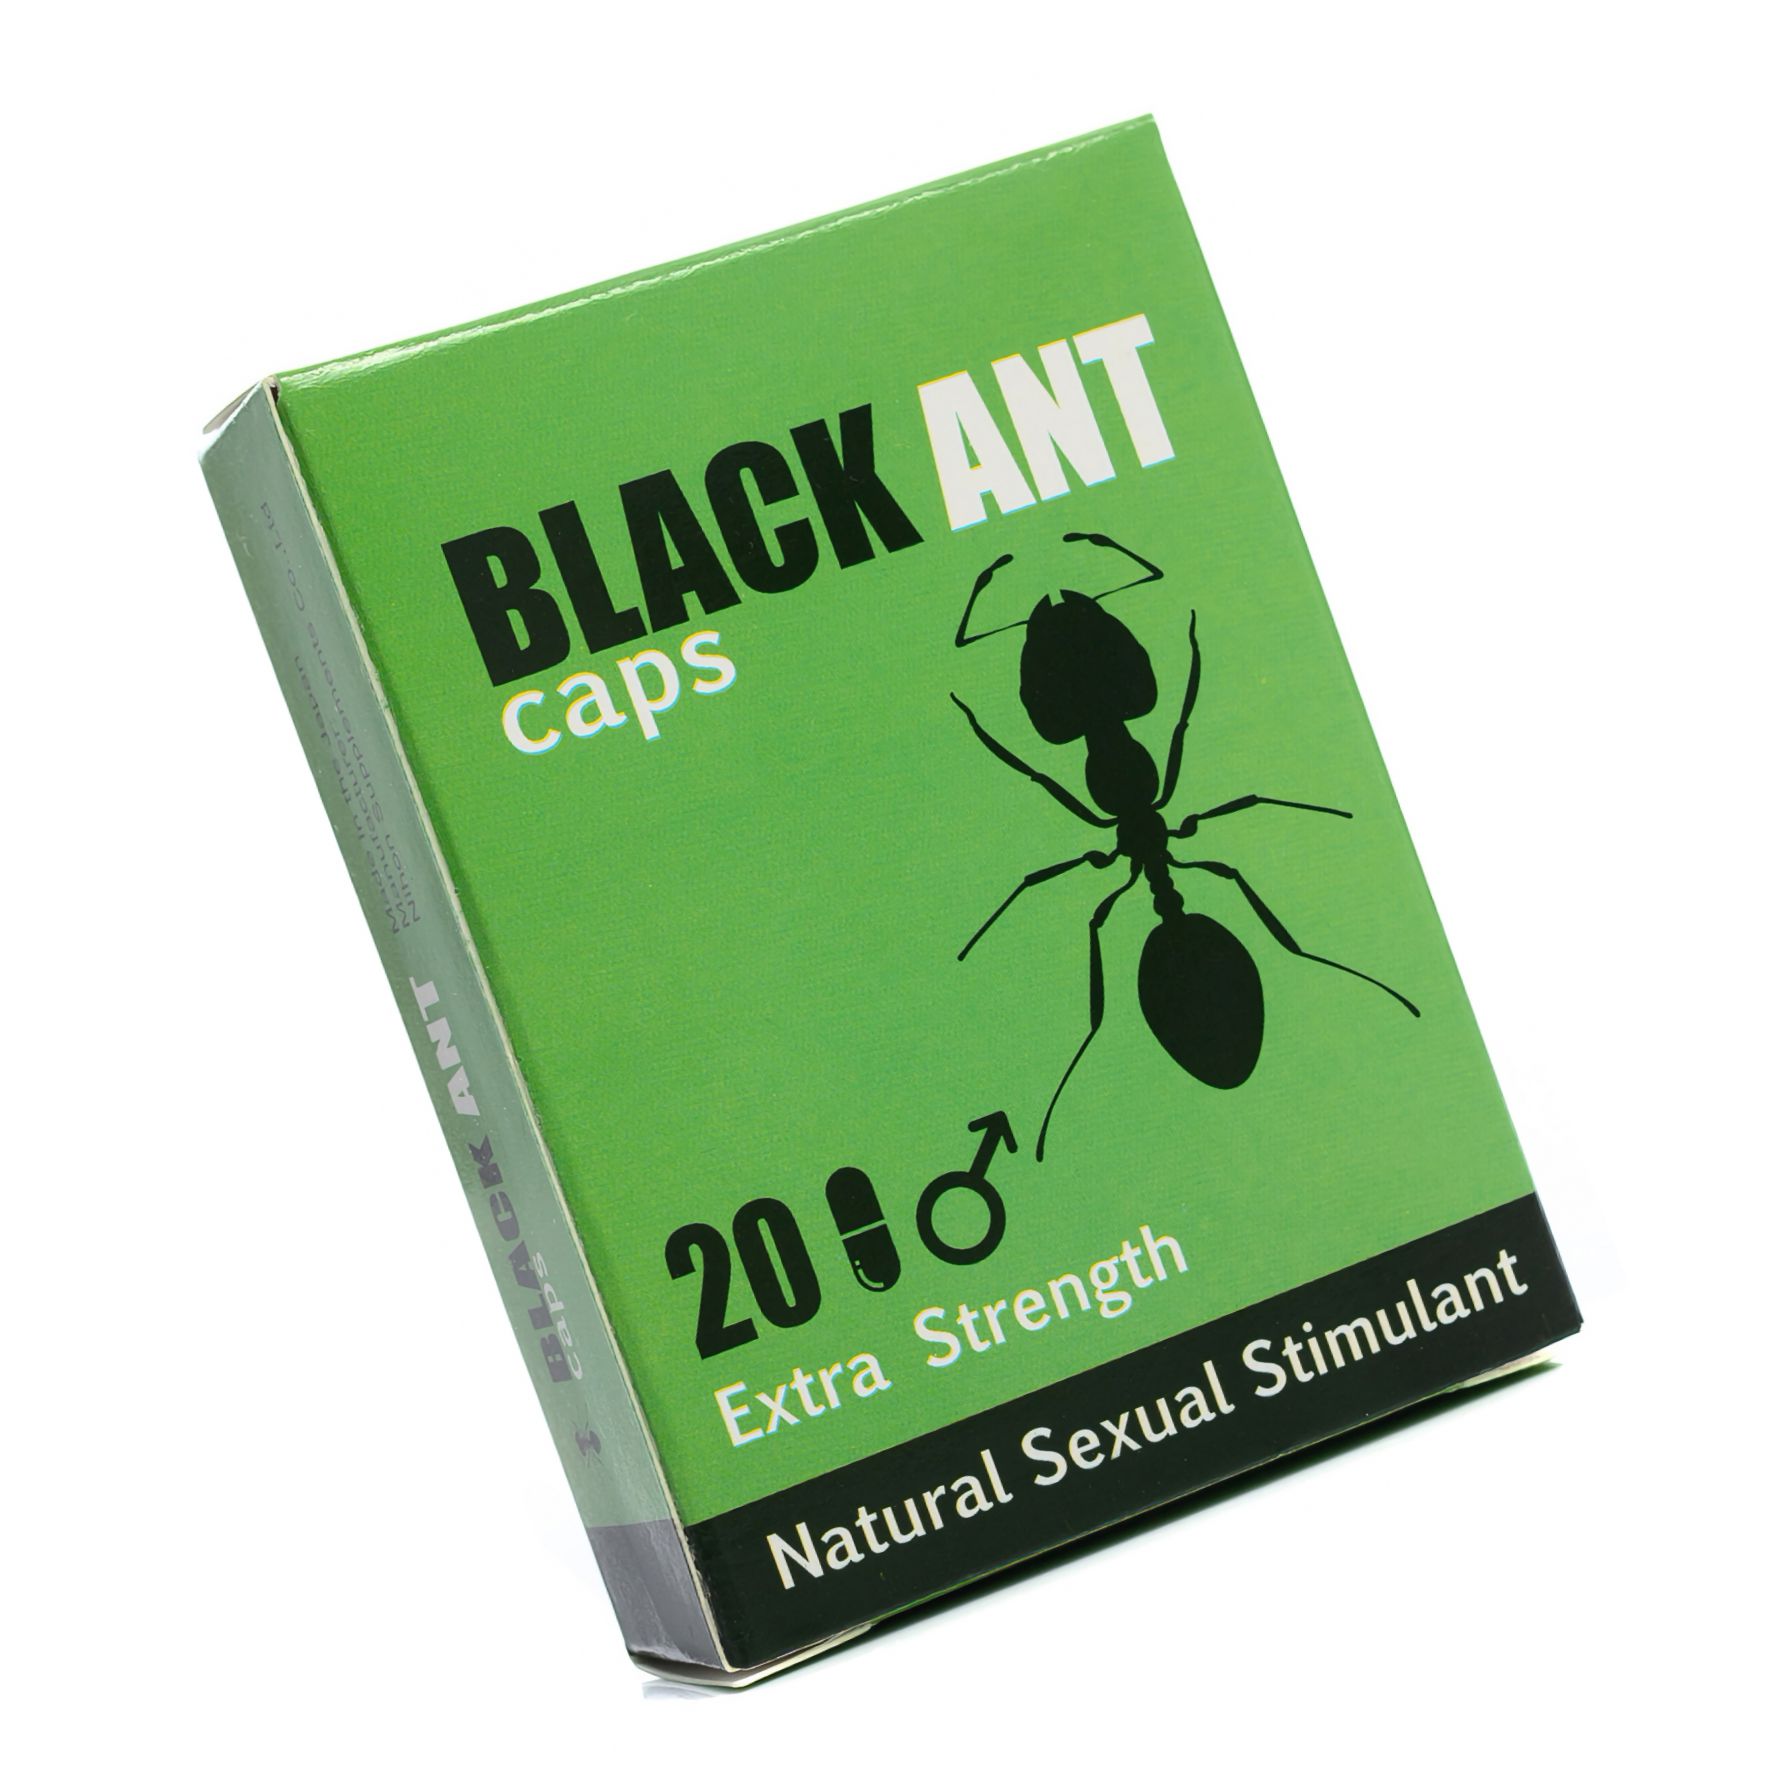 Capsule De Erectie Black Ant 20 buc